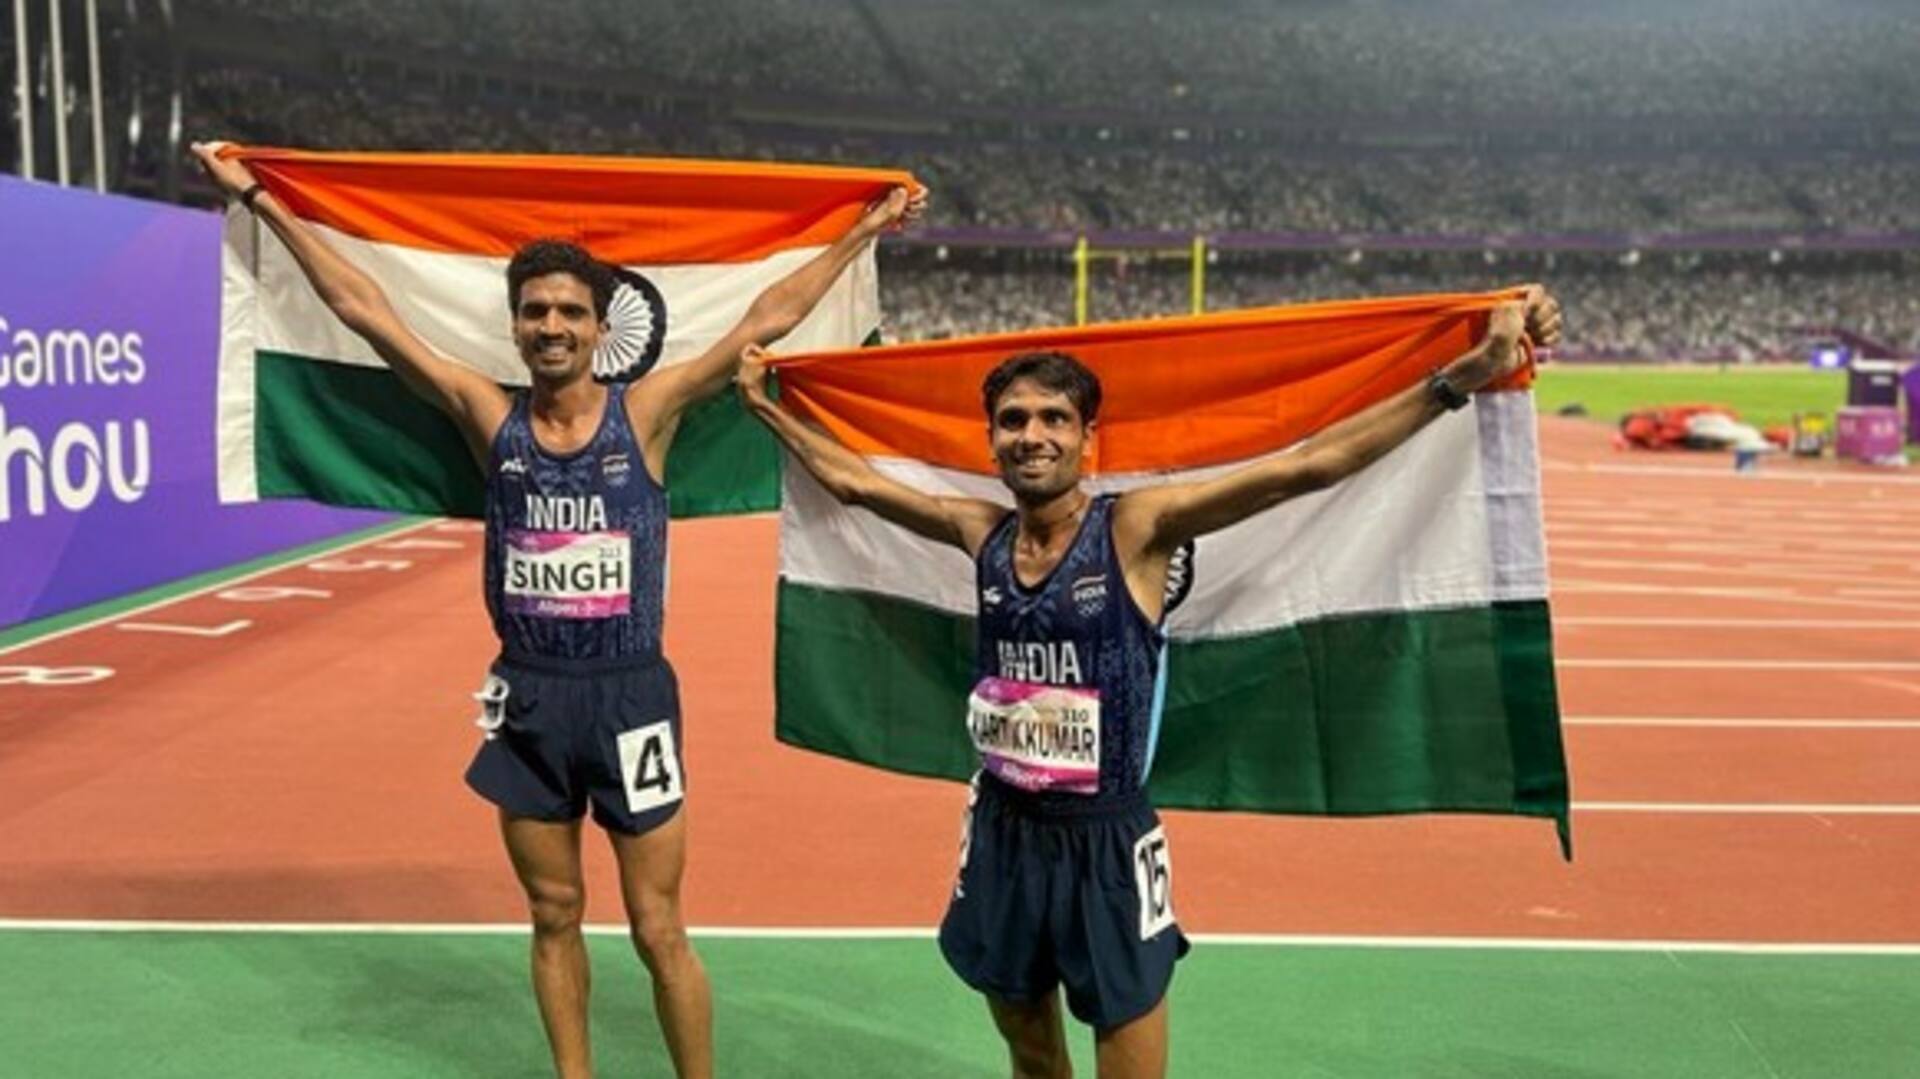 ஆசிய விளையாட்டுப் போட்டிகள்: தடகளத்தில் மேலும் இரண்டு பதக்கங்களை வென்றது இந்தியா